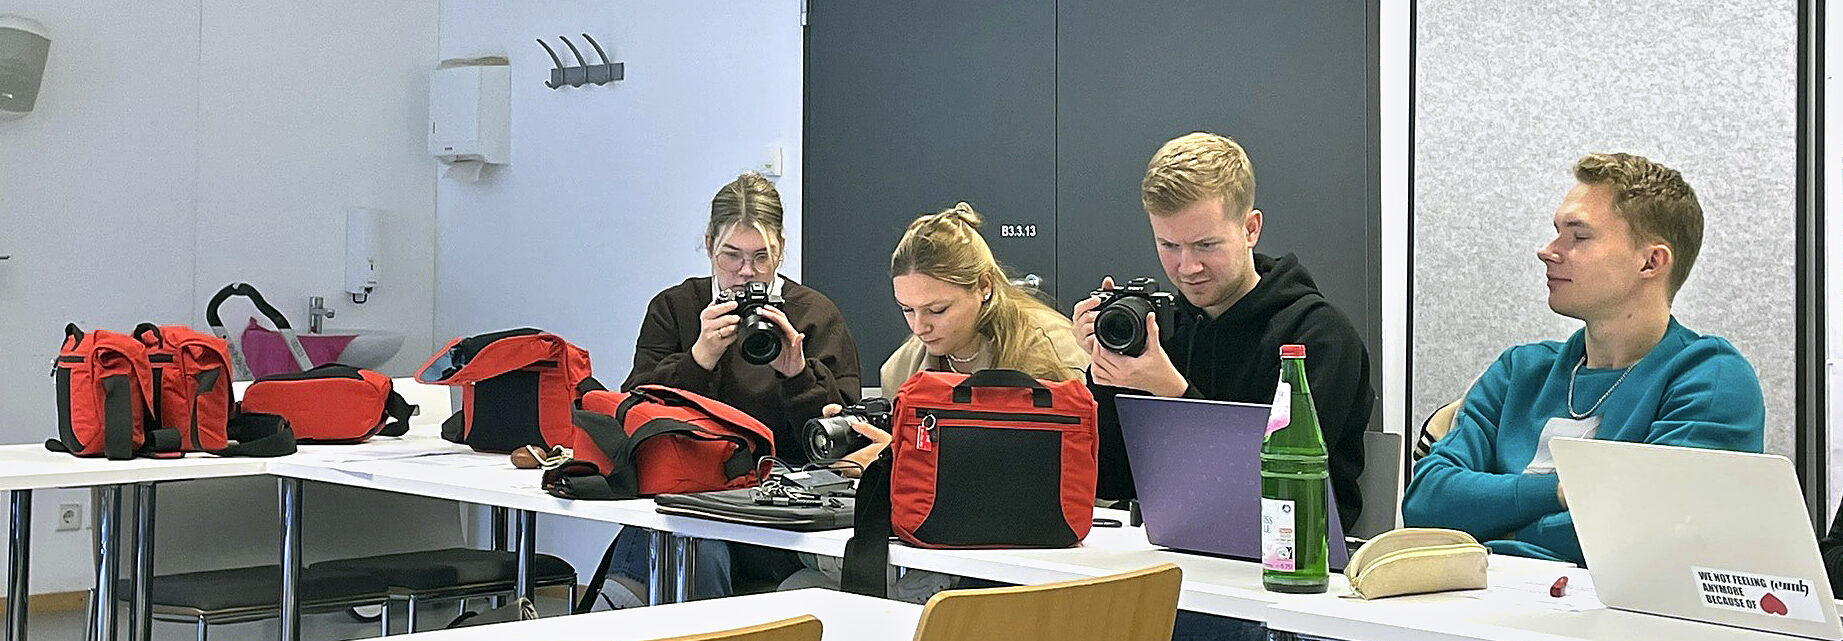 Vier Sudierende beschäftigen sich in einem Seminarraum mit Kameras und Zubehör.